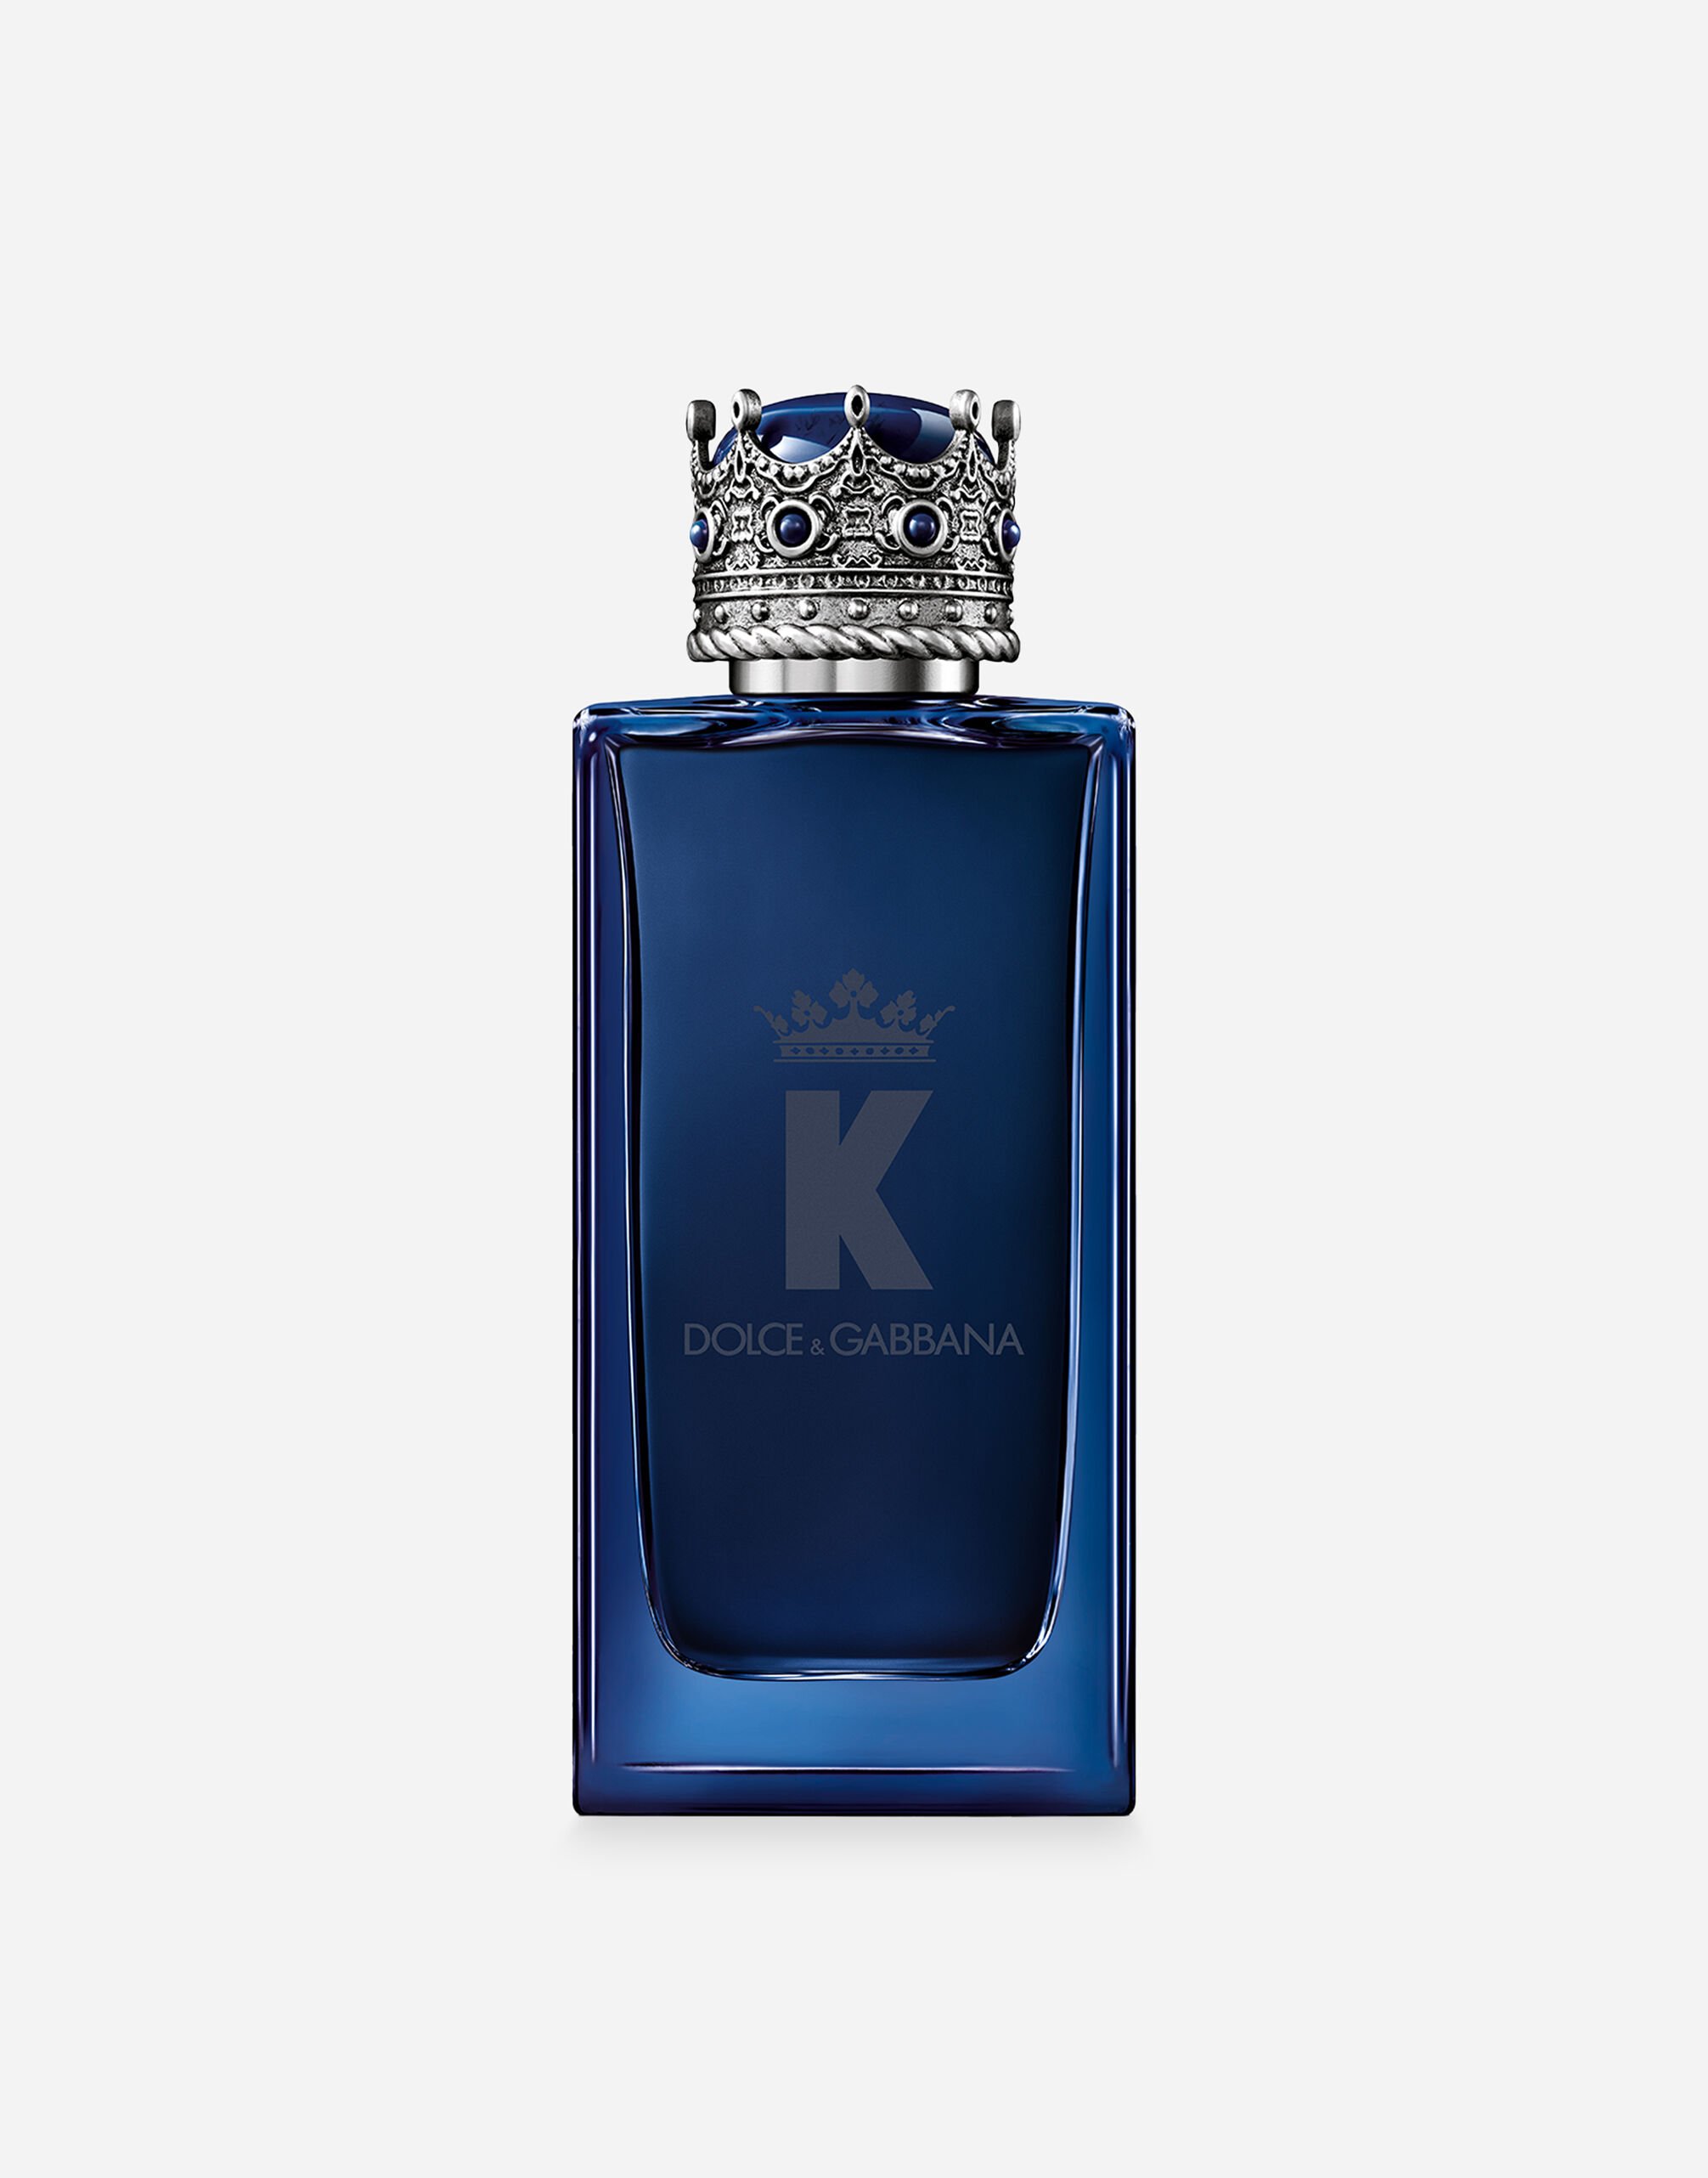 Dolce&Gabbana K by Dolce&Gabbana Eau de Parfum Intense Bleu G9ZY5LHULR0